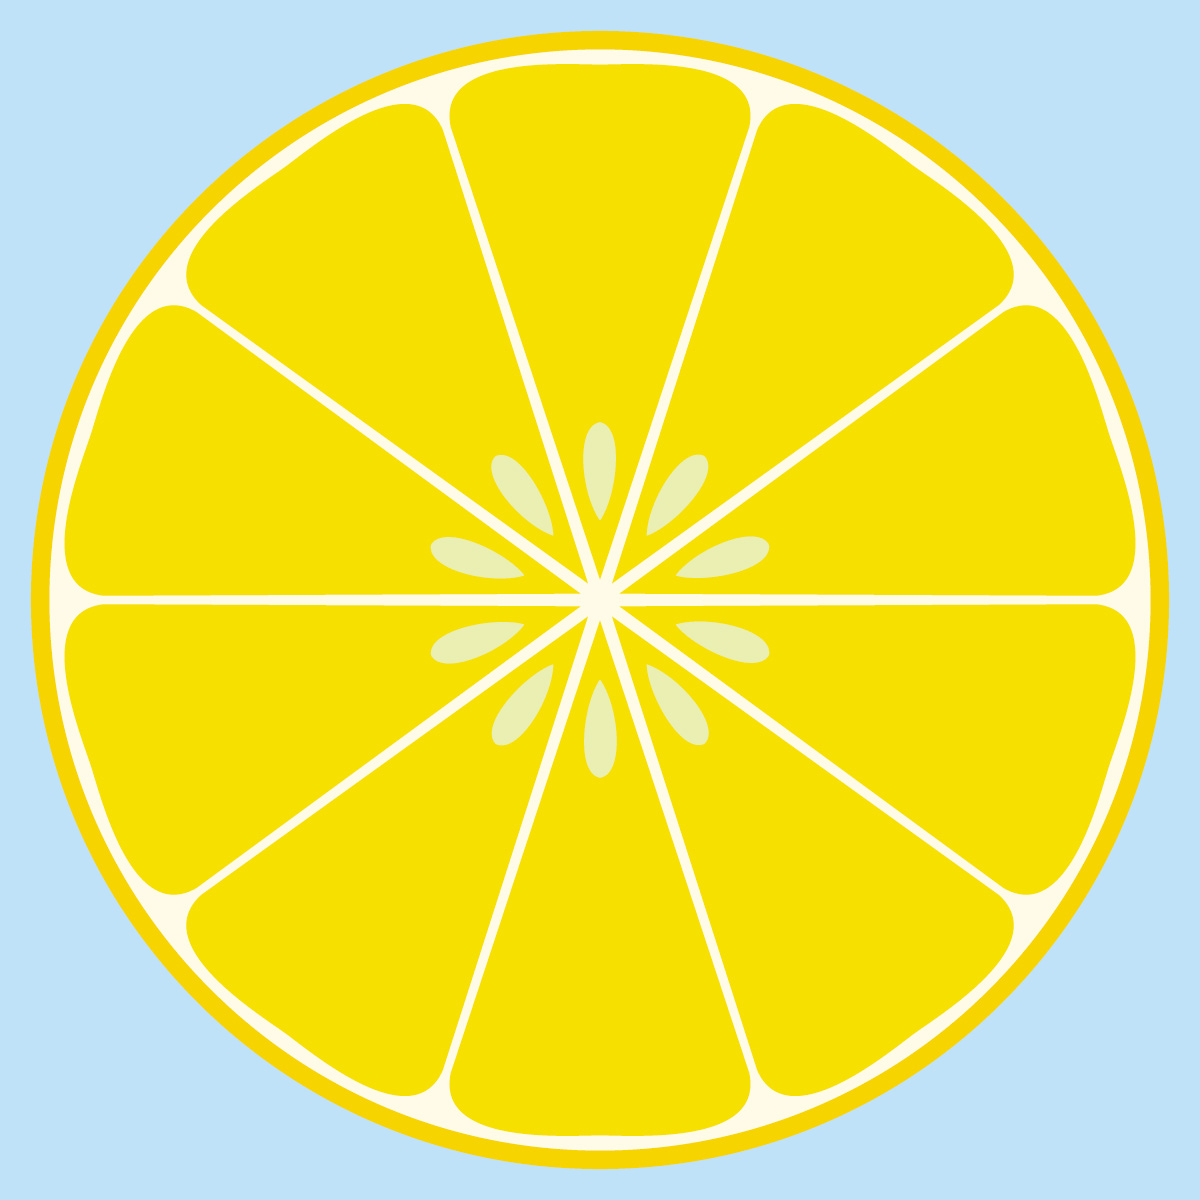 lemon drop clipart - photo #13